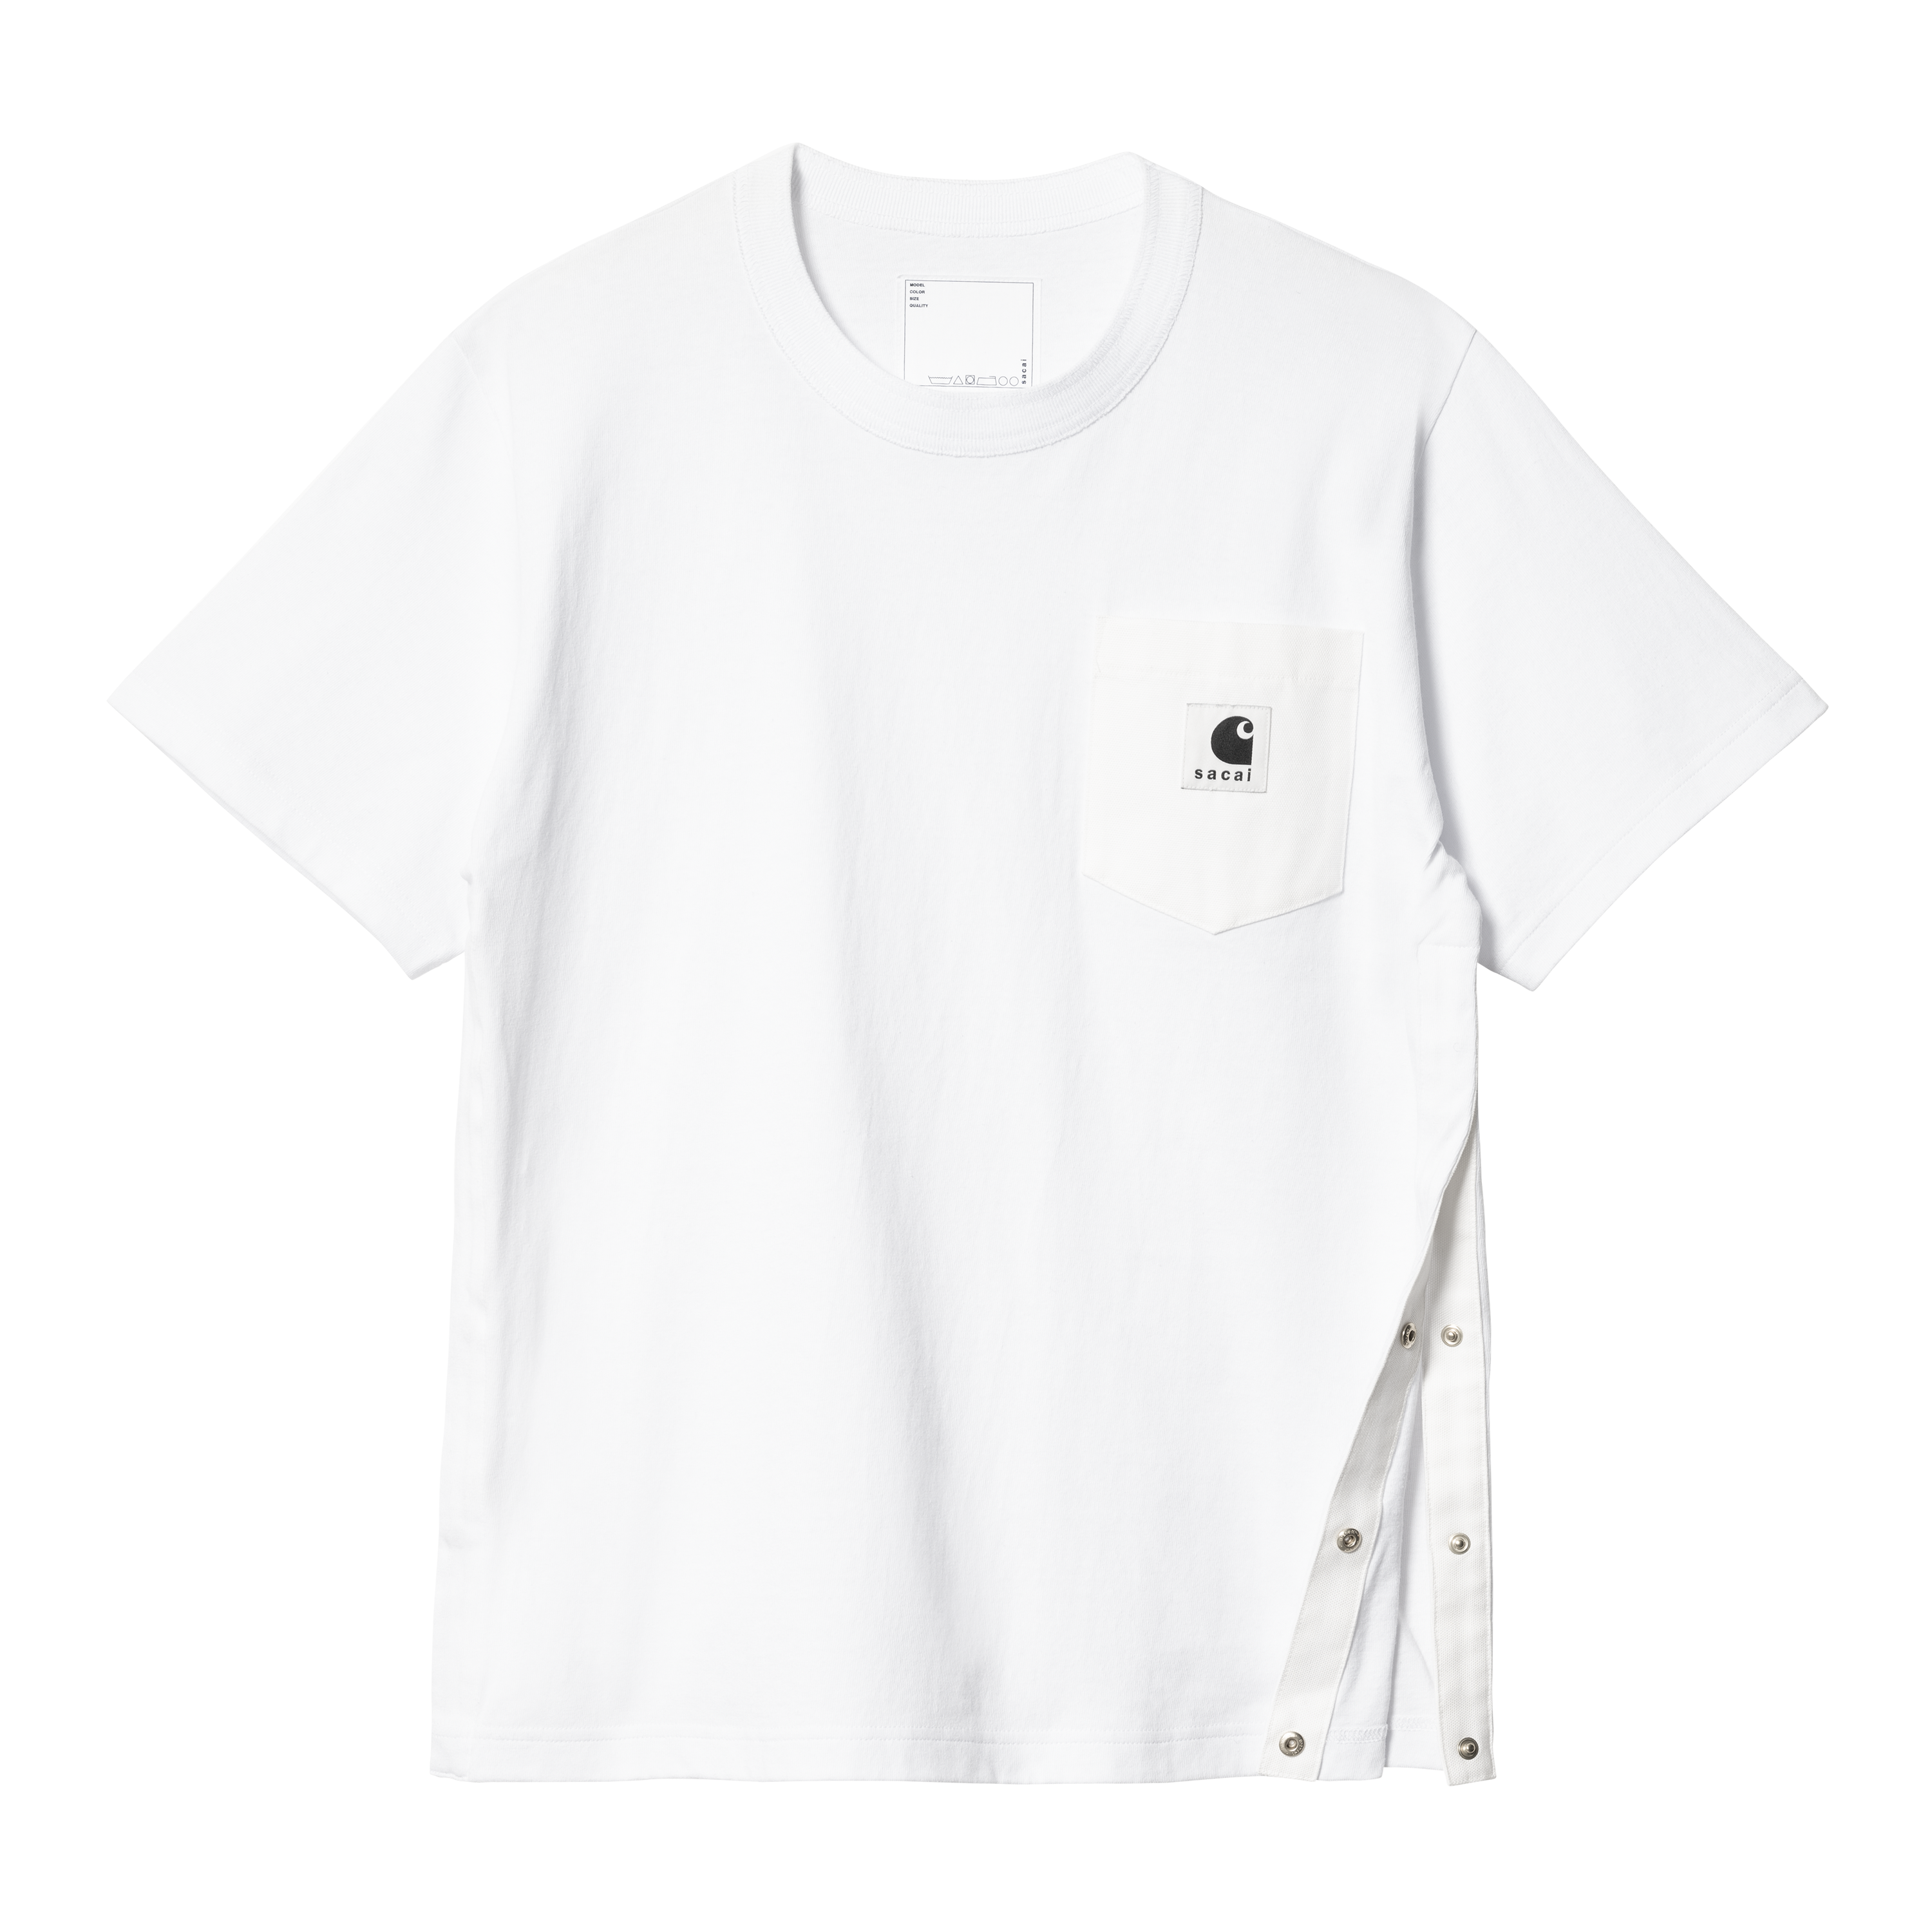 Carhartt WIP T-shirt SIZE 4